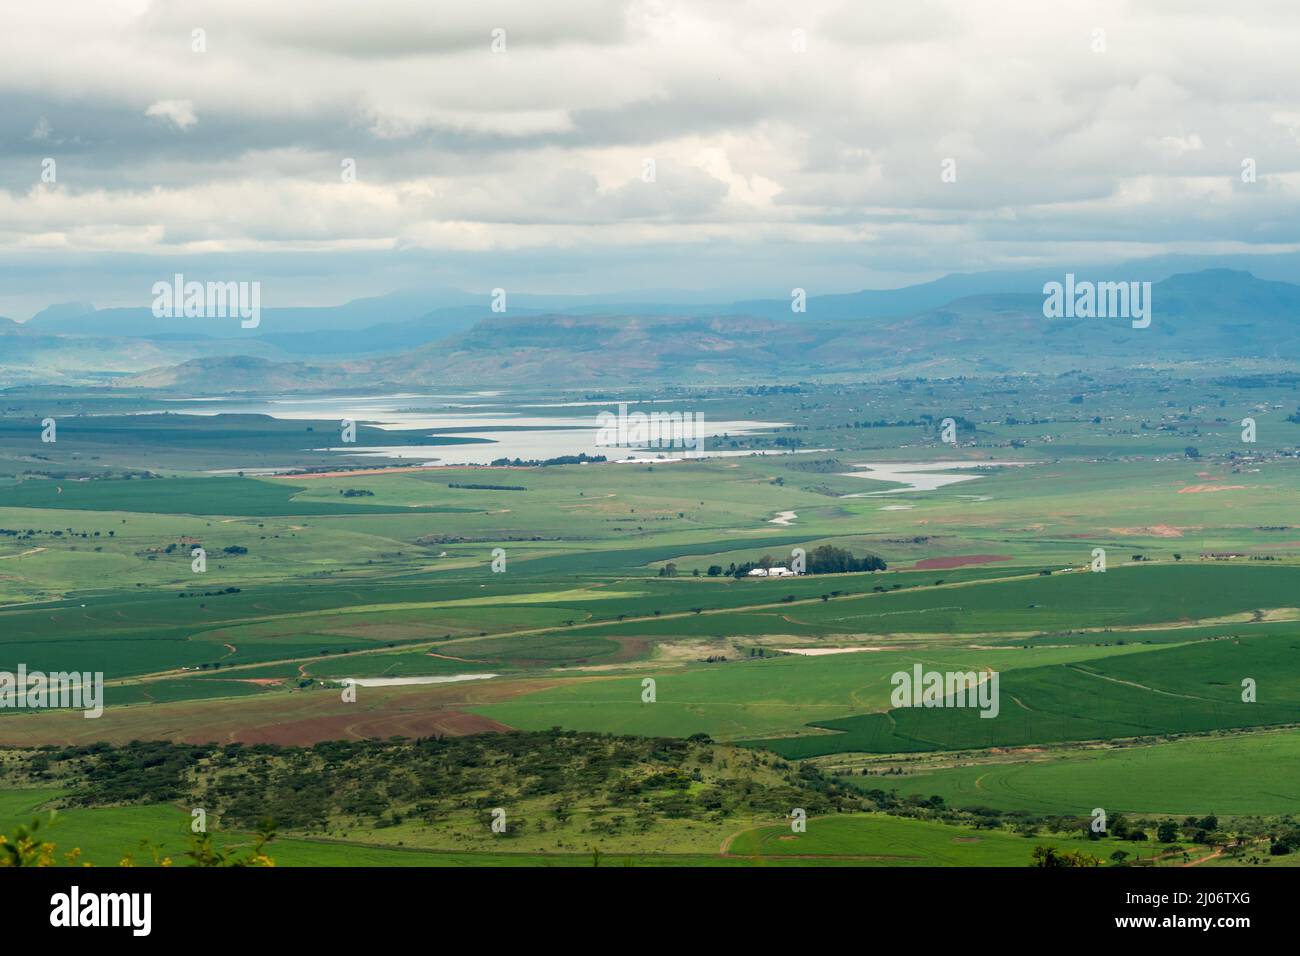 Landwirtschaftliche Landschaft, Bauernhöfe, Ackerland, Ackerland in KwaZulu-Natal, Südafrika Blick von oben oder aus der Luft Stockfoto